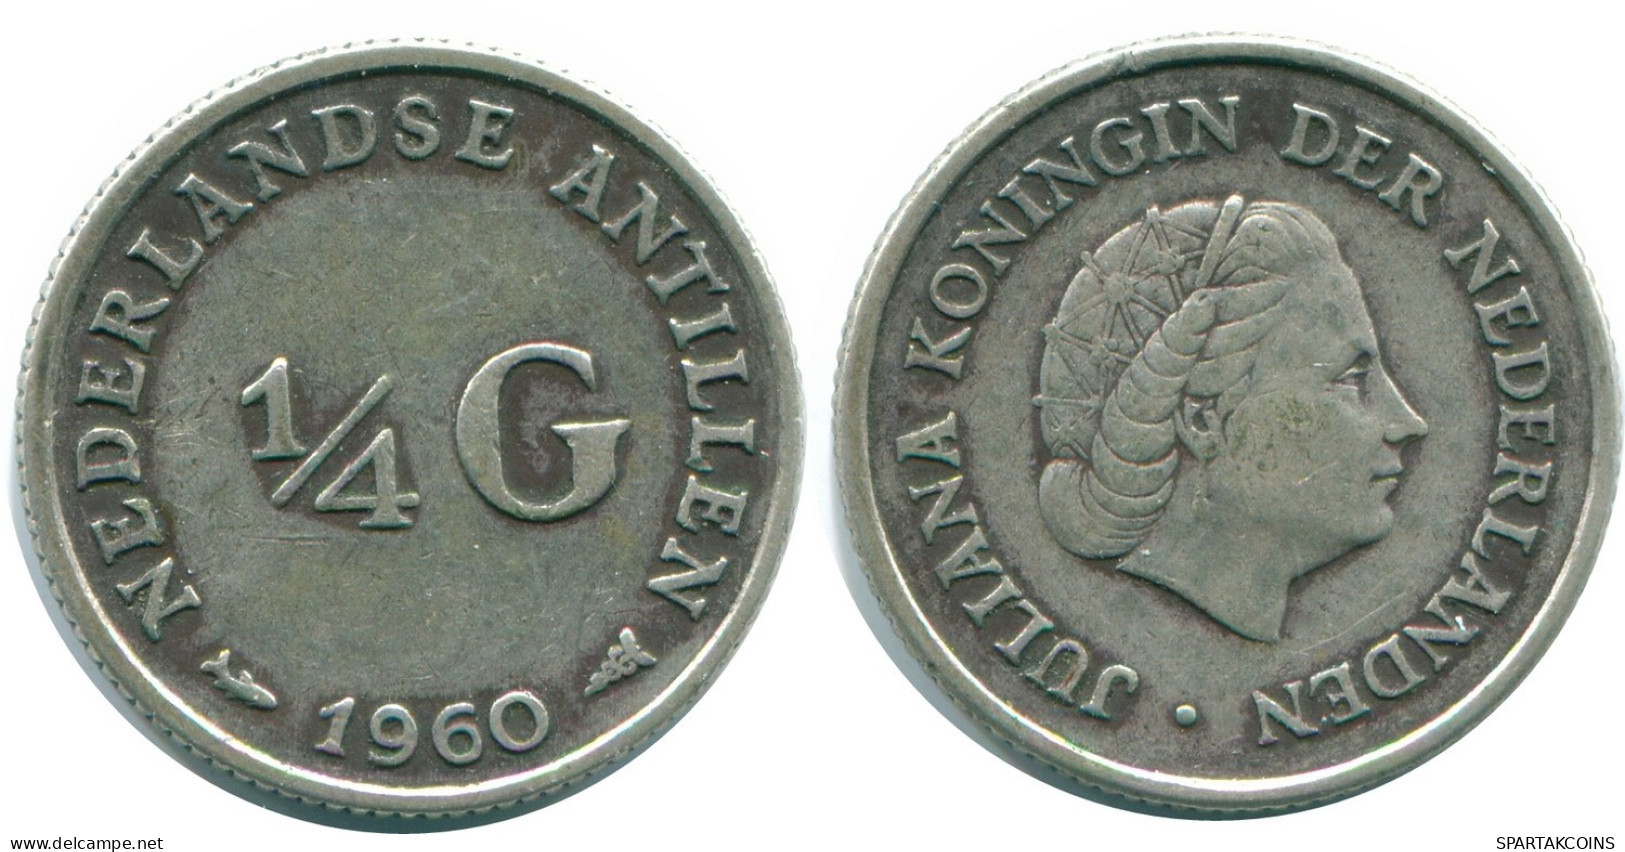 1/4 GULDEN 1960 NIEDERLÄNDISCHE ANTILLEN SILBER Koloniale Münze #NL11096.4.D.A - Antilles Néerlandaises